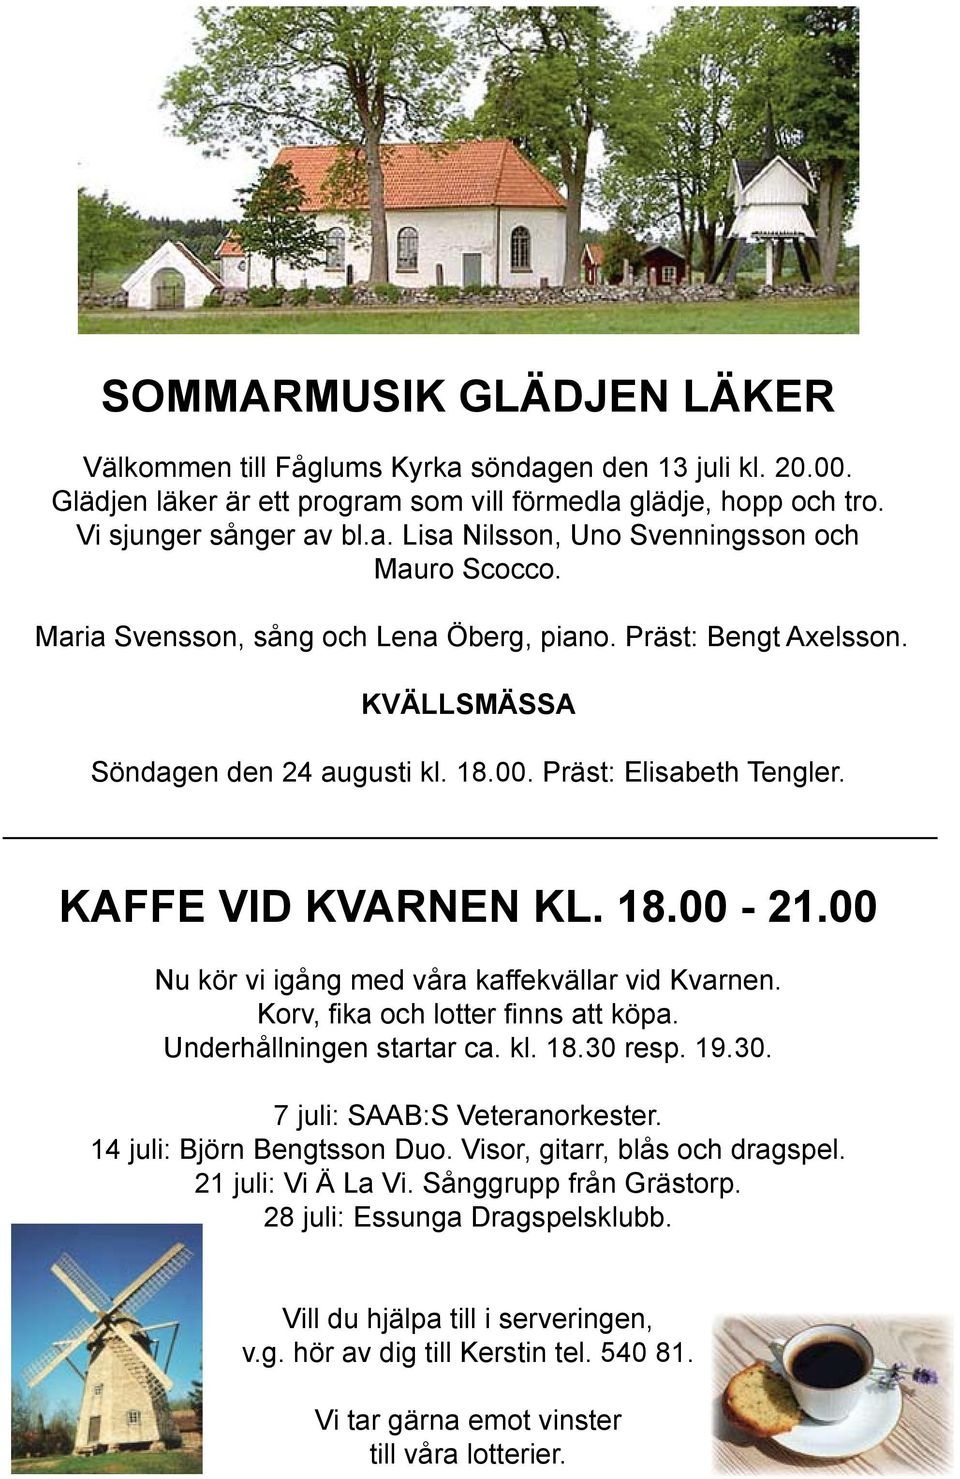 00 Nu kör vi igång med våra kaffekvällar vid Kvarnen. Korv, fi ka och lotter fi nns att köpa. Underhållningen startar ca. kl. 18.30 resp. 19.30. 7 juli: SAAB:S Veteranorkester.